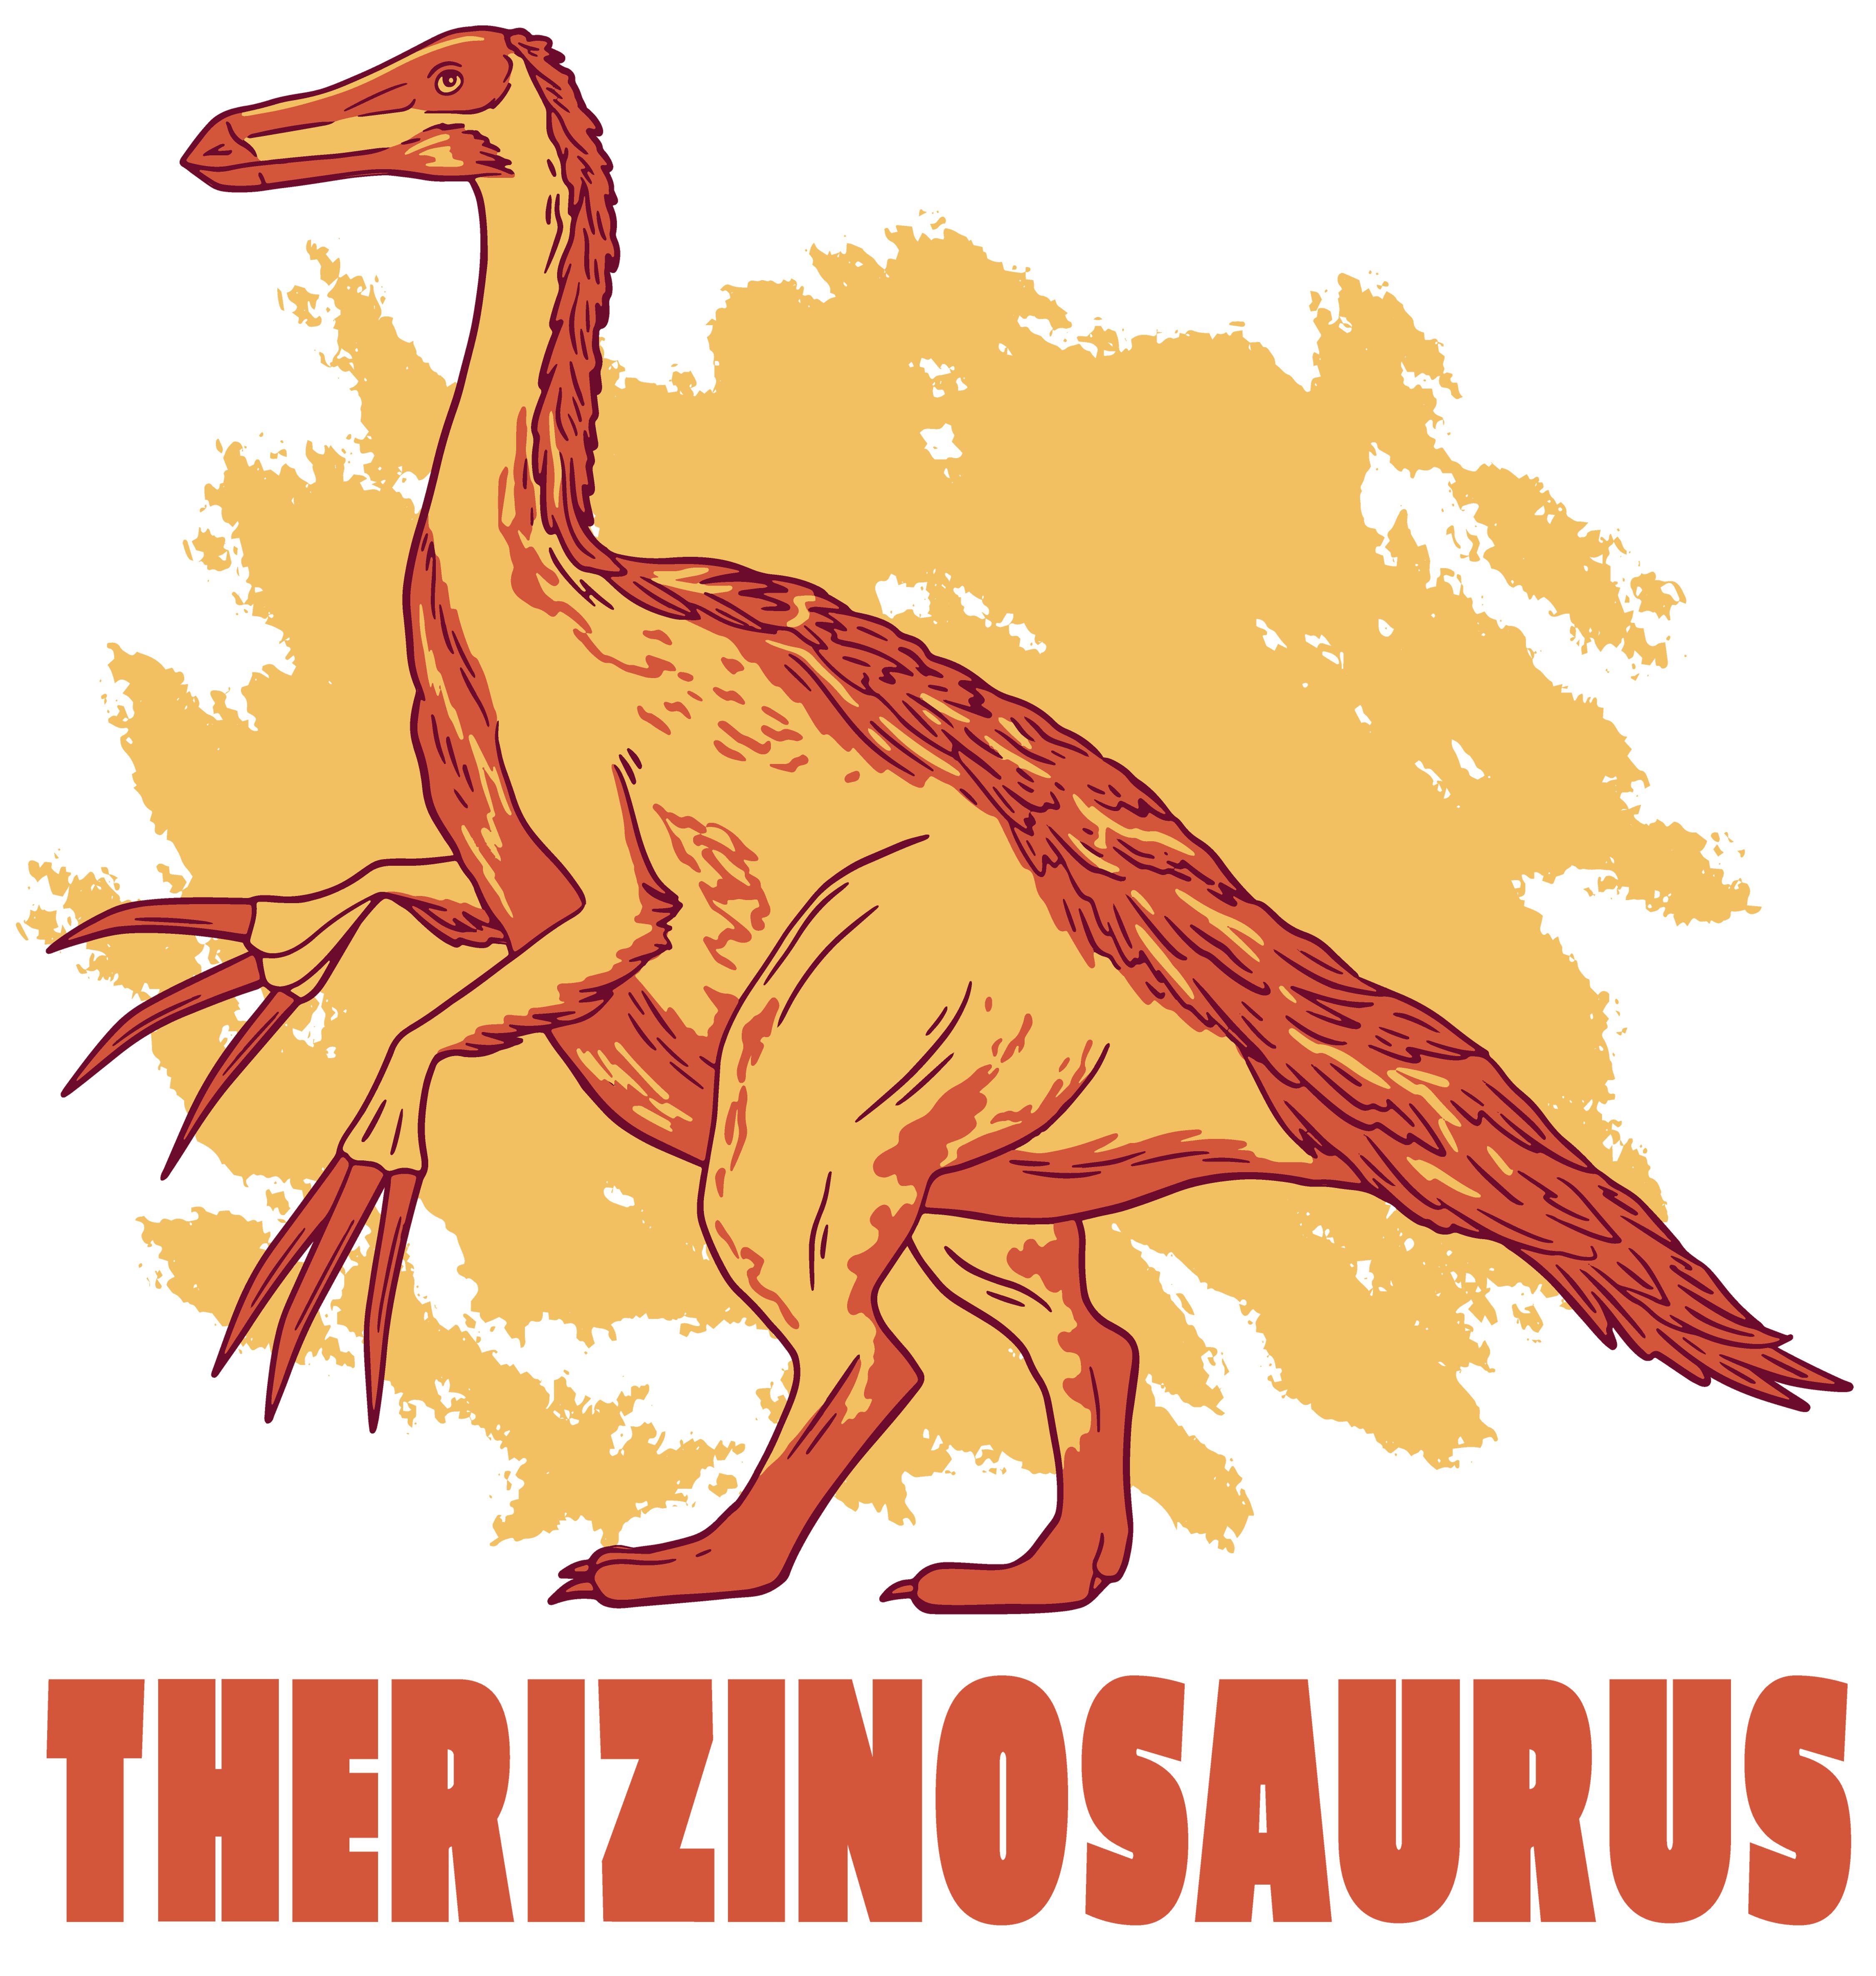 MyDesign24 blau, mit i87 Print-Shirt Baumwollshirt weiß, Kinder Dino, mit T-Shirt Therizinosaurus schwarz, weiss rot, bedrucktes